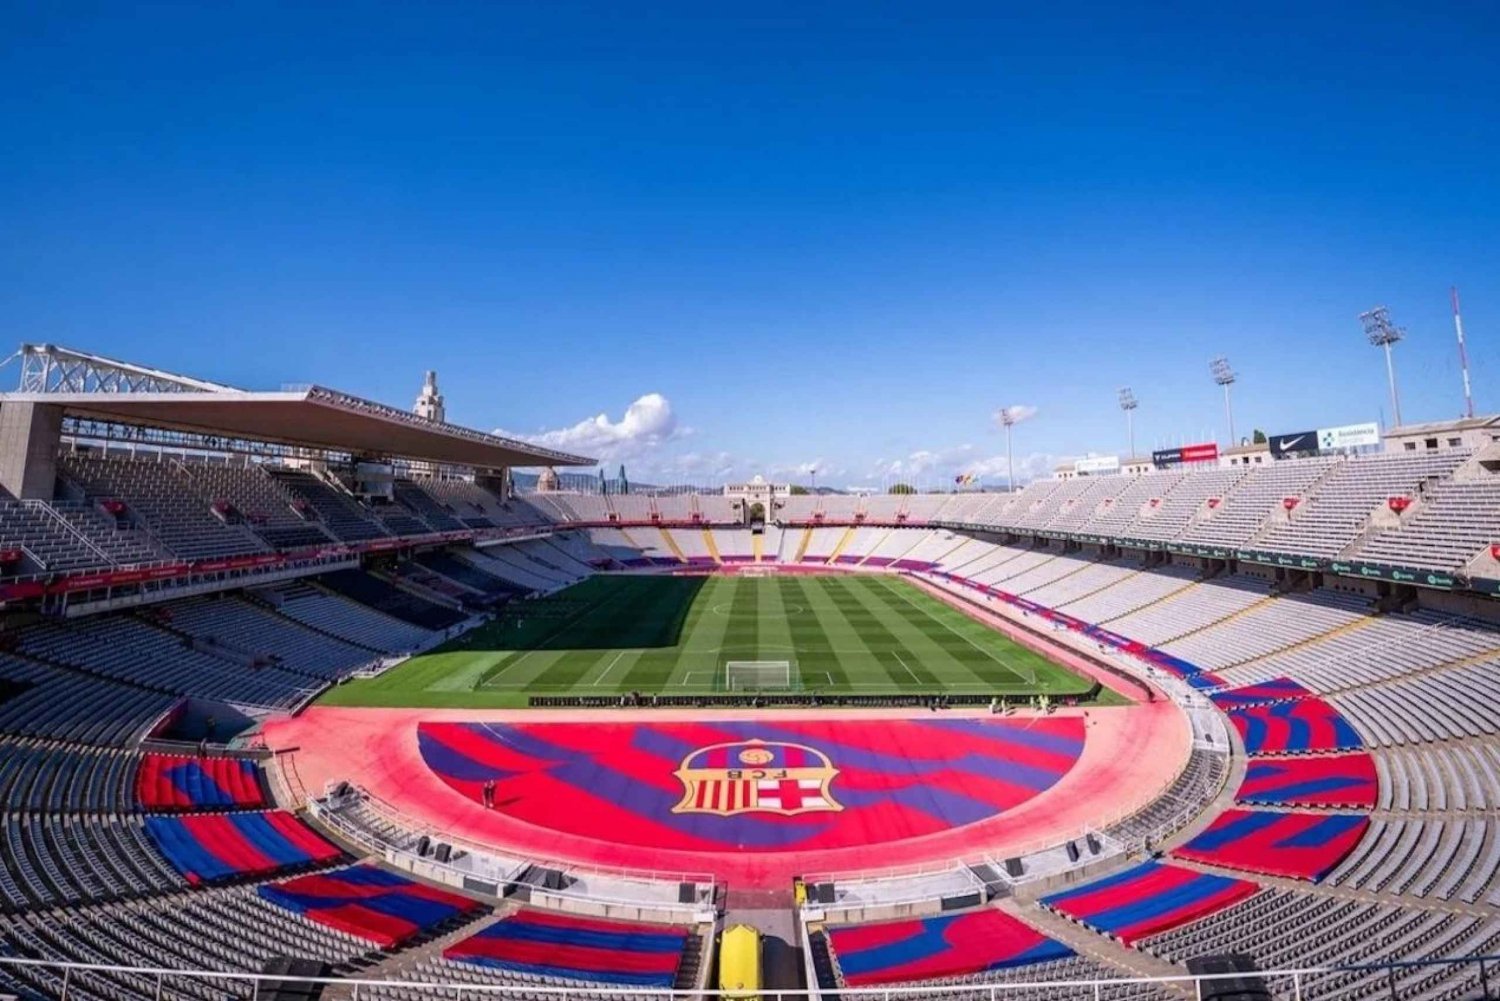 Barcelona: FC Barcelona Wedstrijddag Tour in Olympisch Stadion